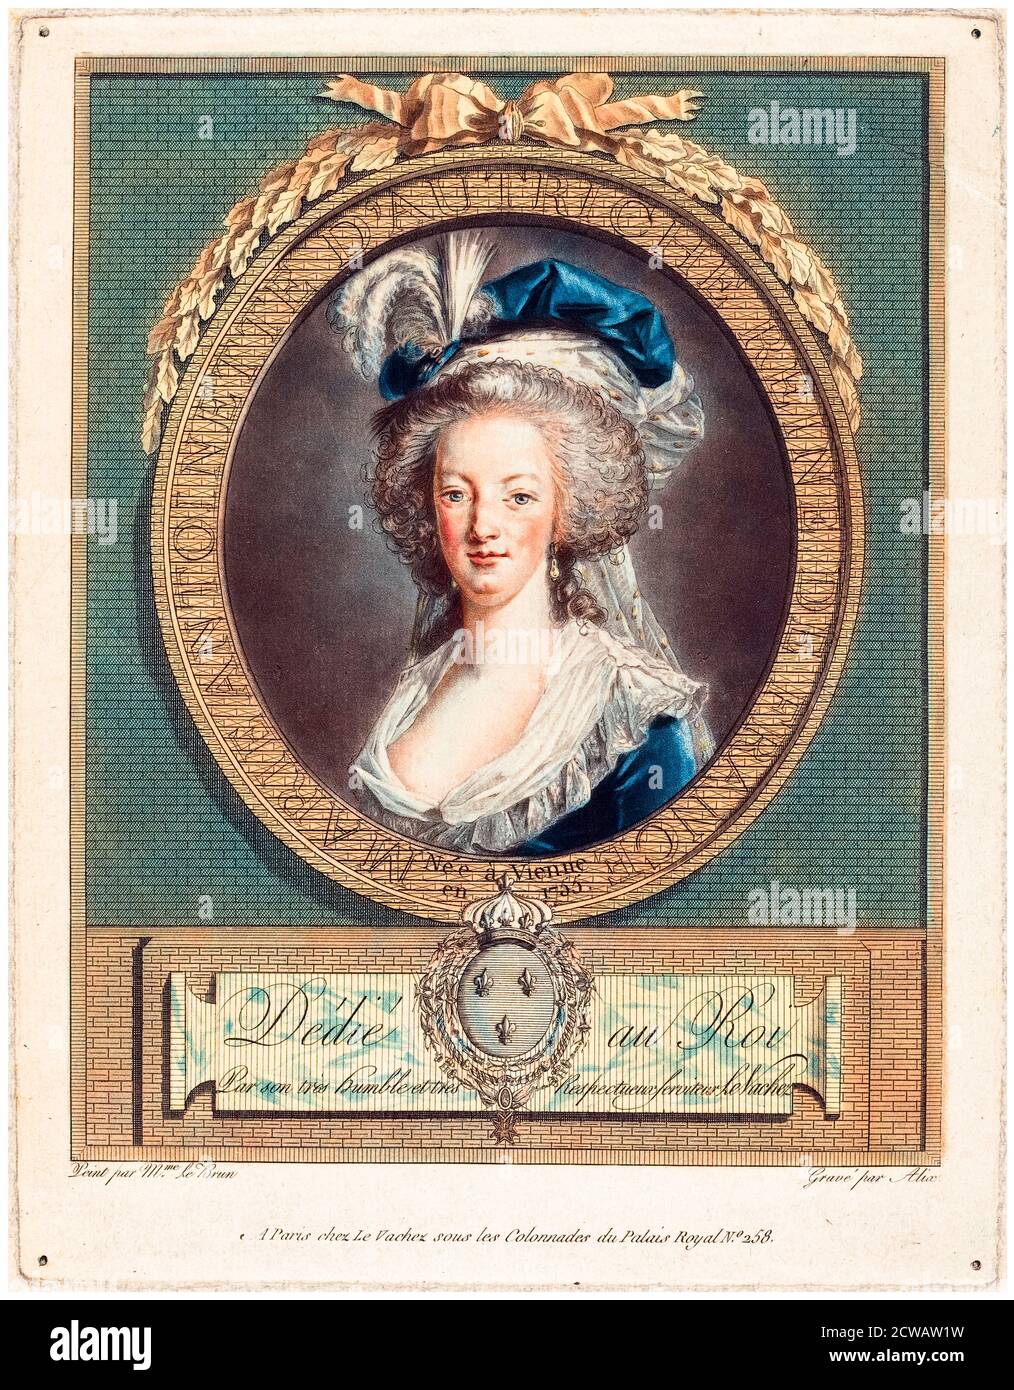 Marie Antoinette (1755-1793) Reine de France, portrait imprimé par Pierre Michel Alix, vers 1789 Banque D'Images